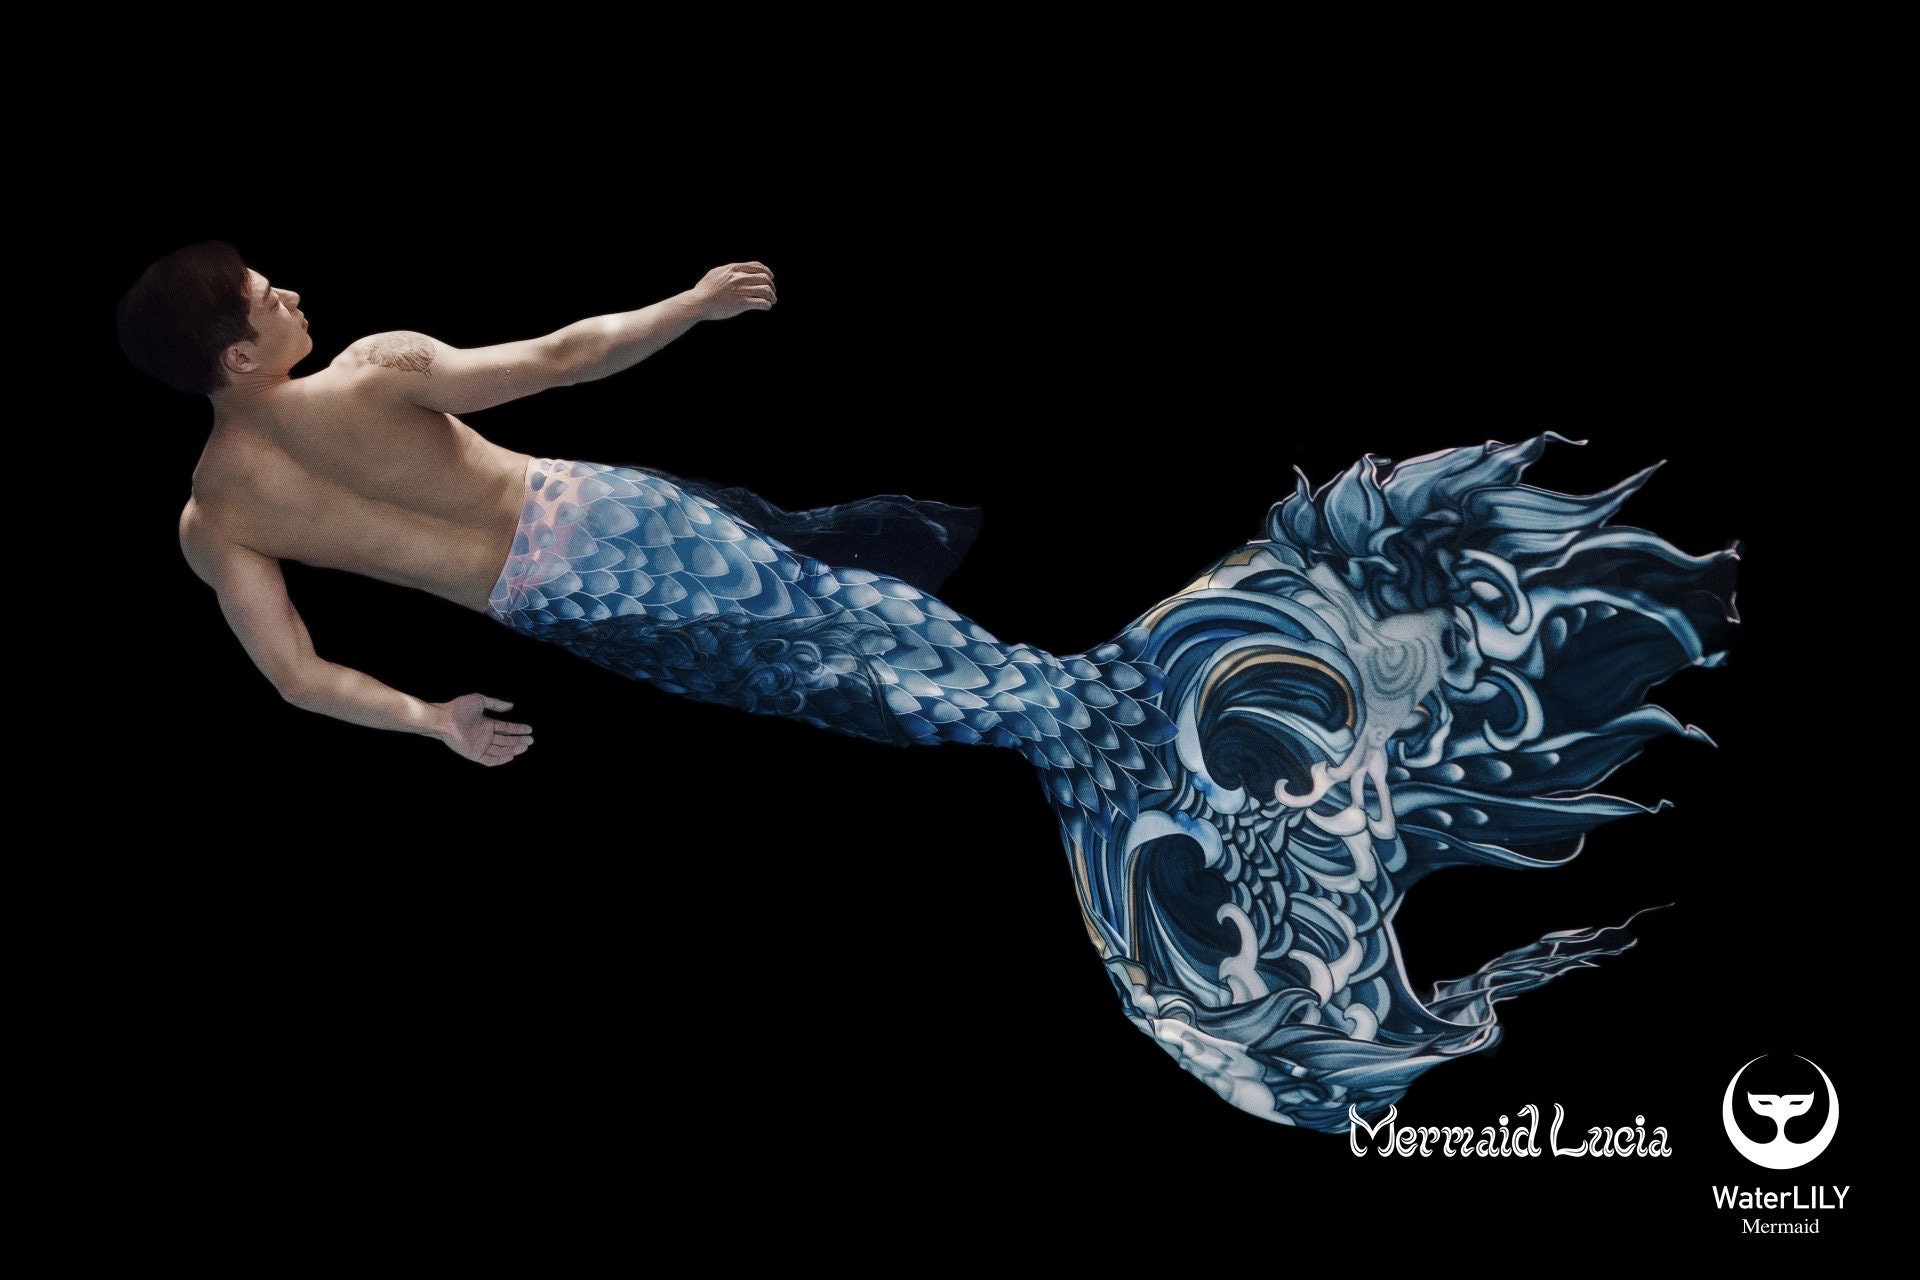 SIREN SONG  Mako mermaids, Merman, Mermaid